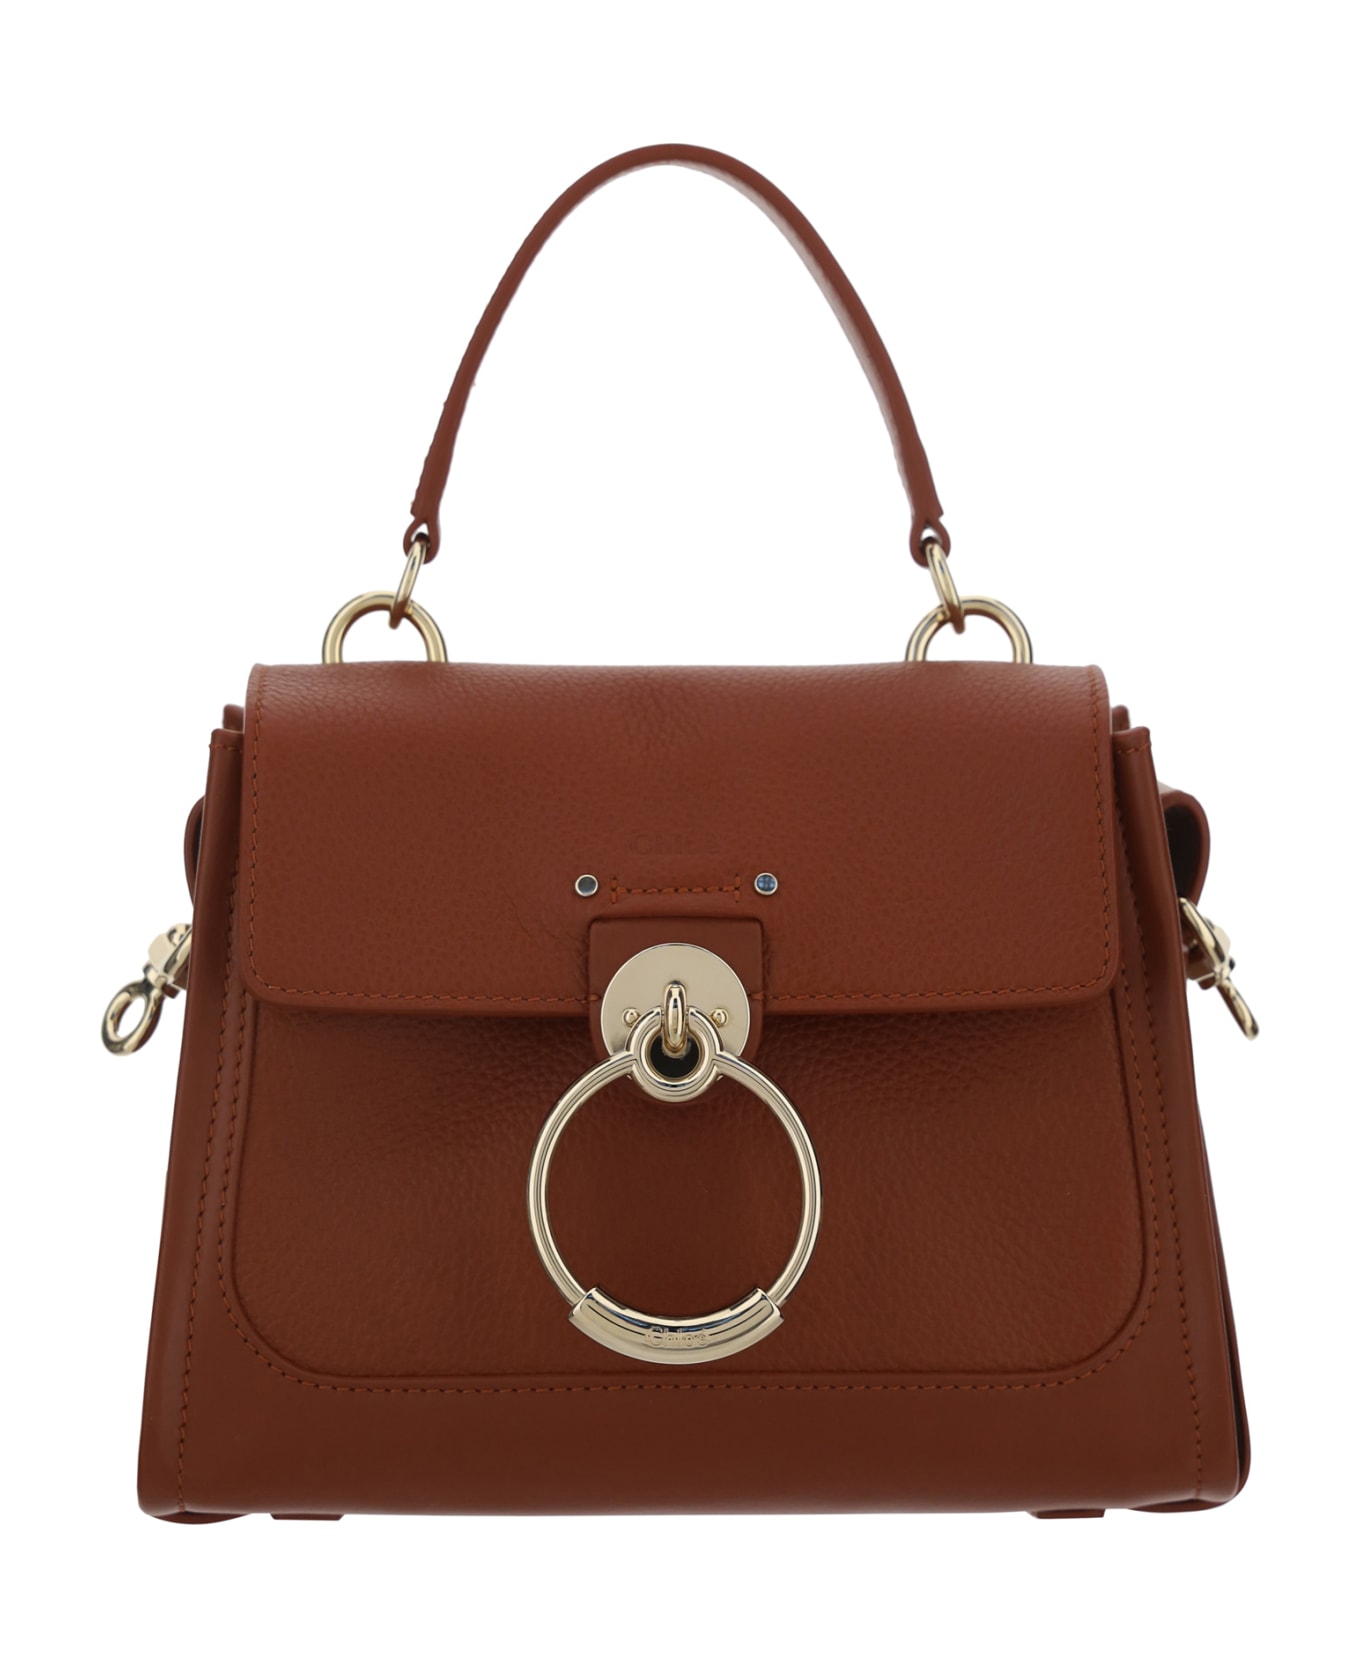 Chloé Tess Handbag - Leather Brown